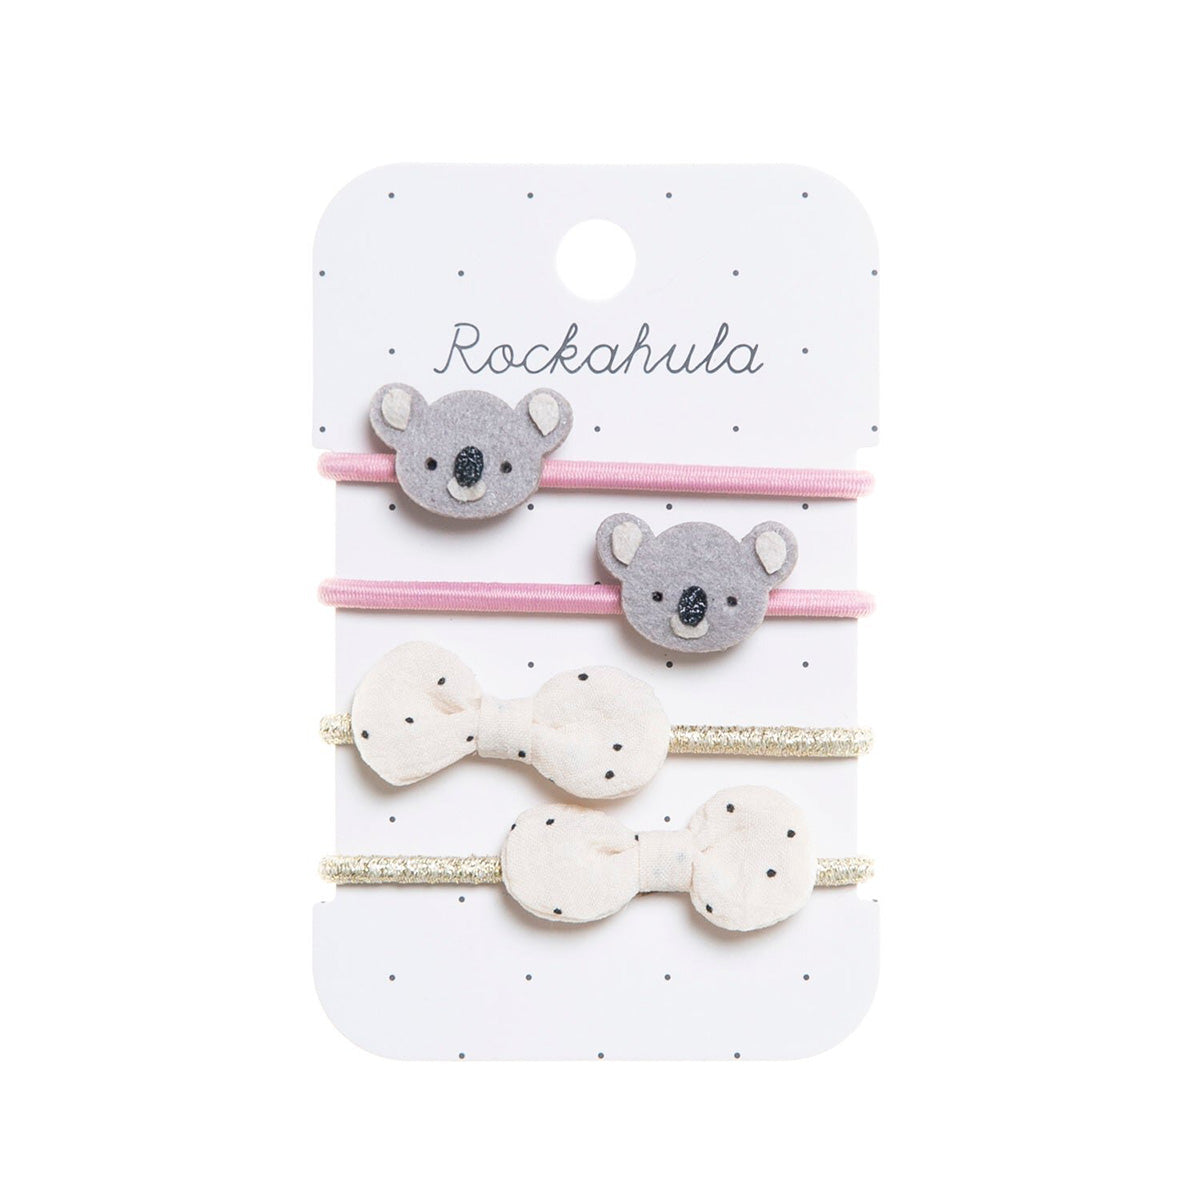 De kimmy koala elastiekjes van Rockahula zijn schattig! De set van 4 elastiekjes is versierd met een lief koala gezichtje én witte strikjes met polkadot print. De elastieken zijn lief, handig en leuk als cadeau! VanZus